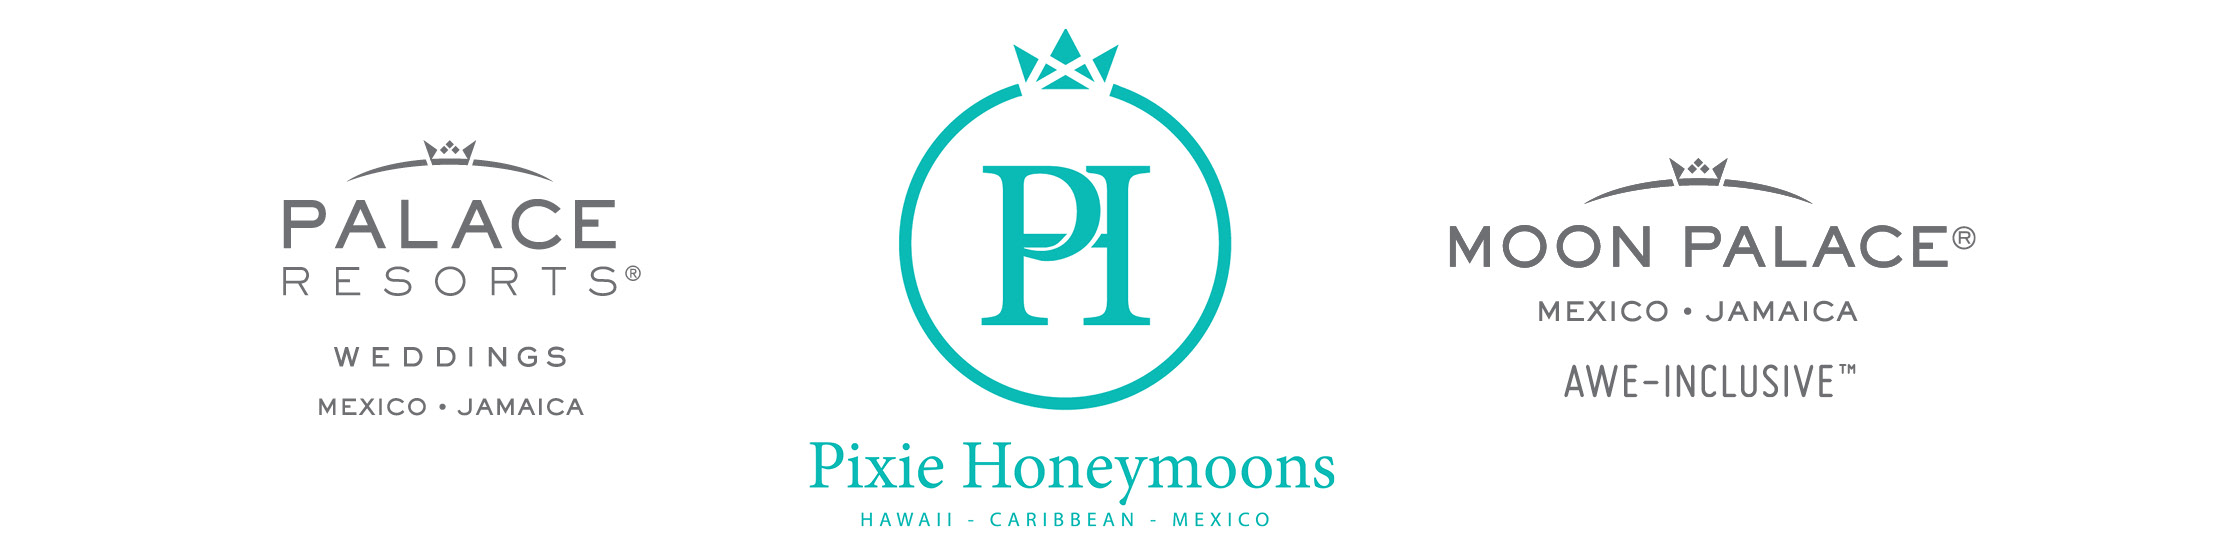 ASW honeymoon contest | Pixie Honeymoons